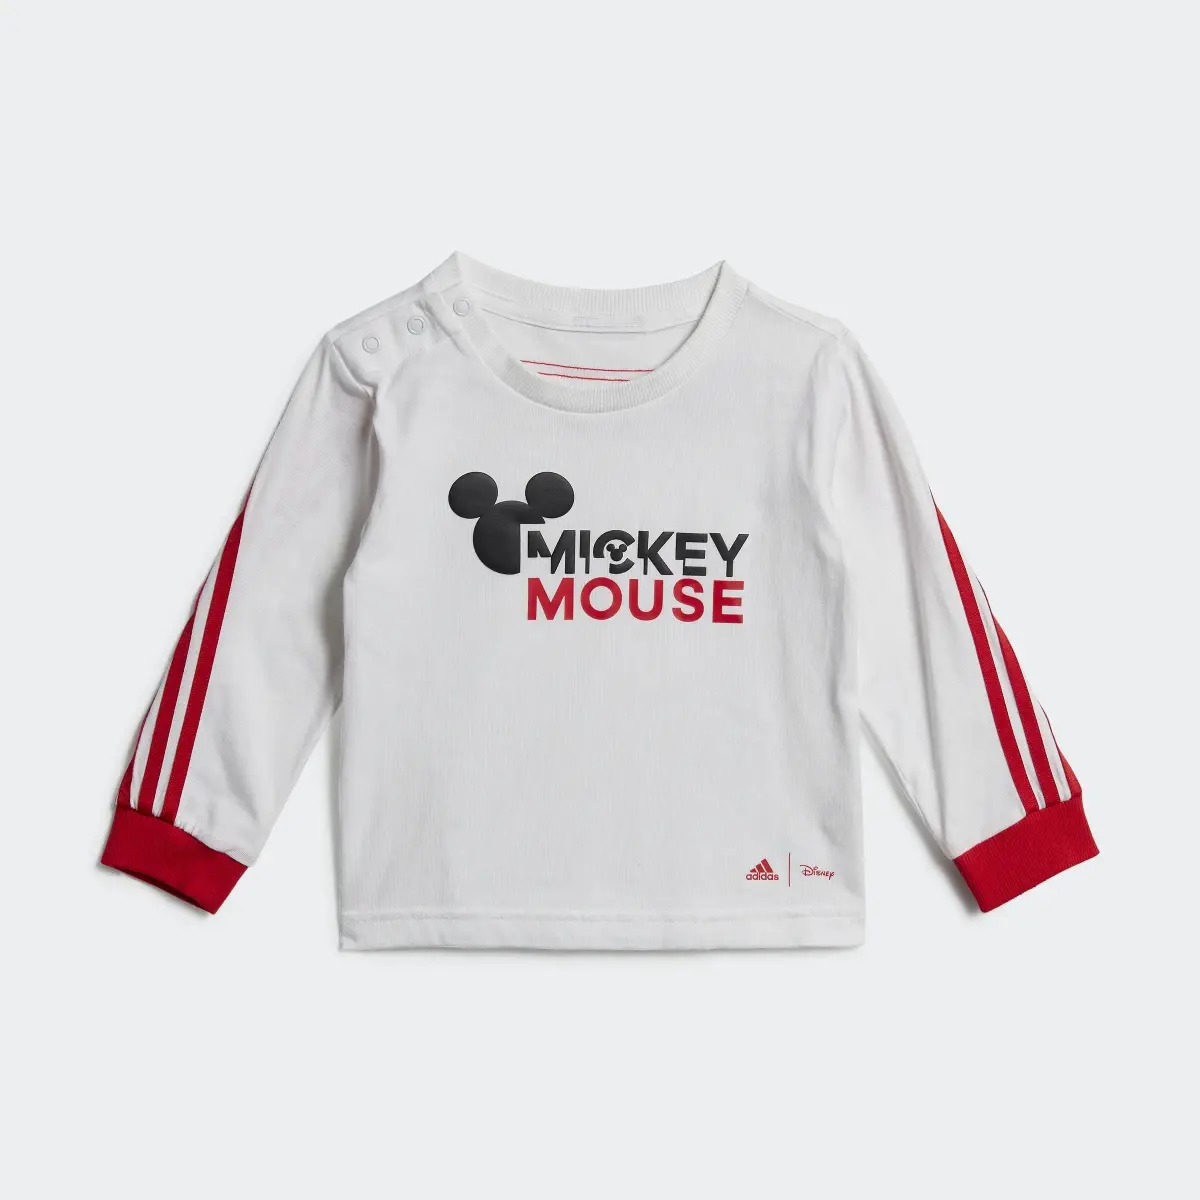 Adidas x Disney Mickey Mouse Einteiler-Set. 3